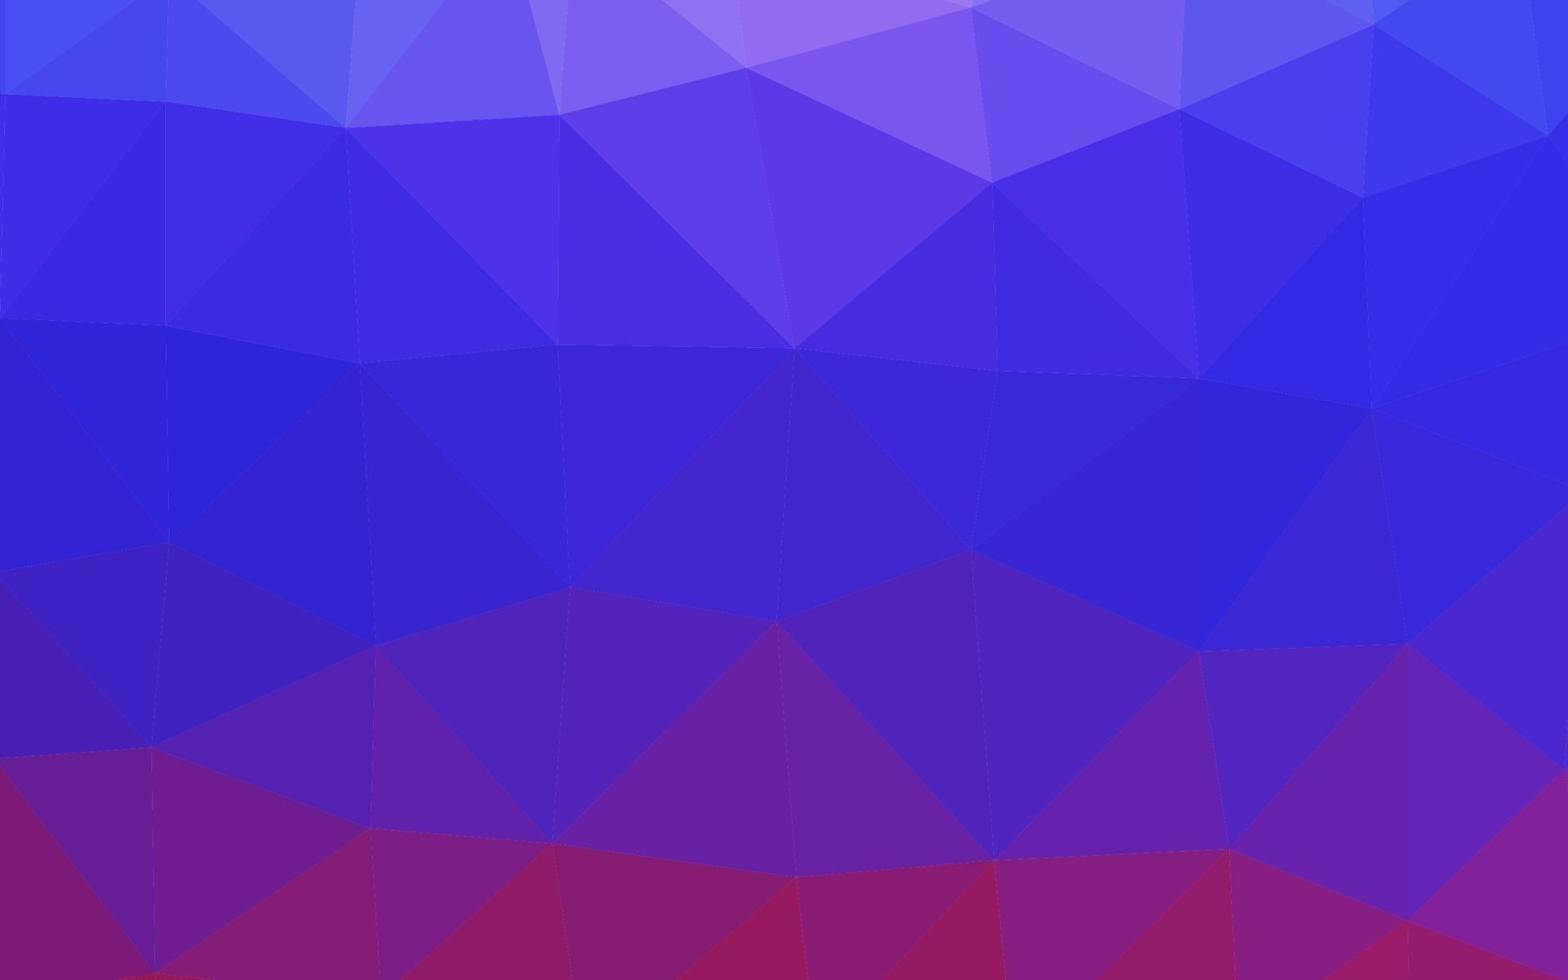 copertina poligonale astratta vettoriale rosa chiaro, blu.